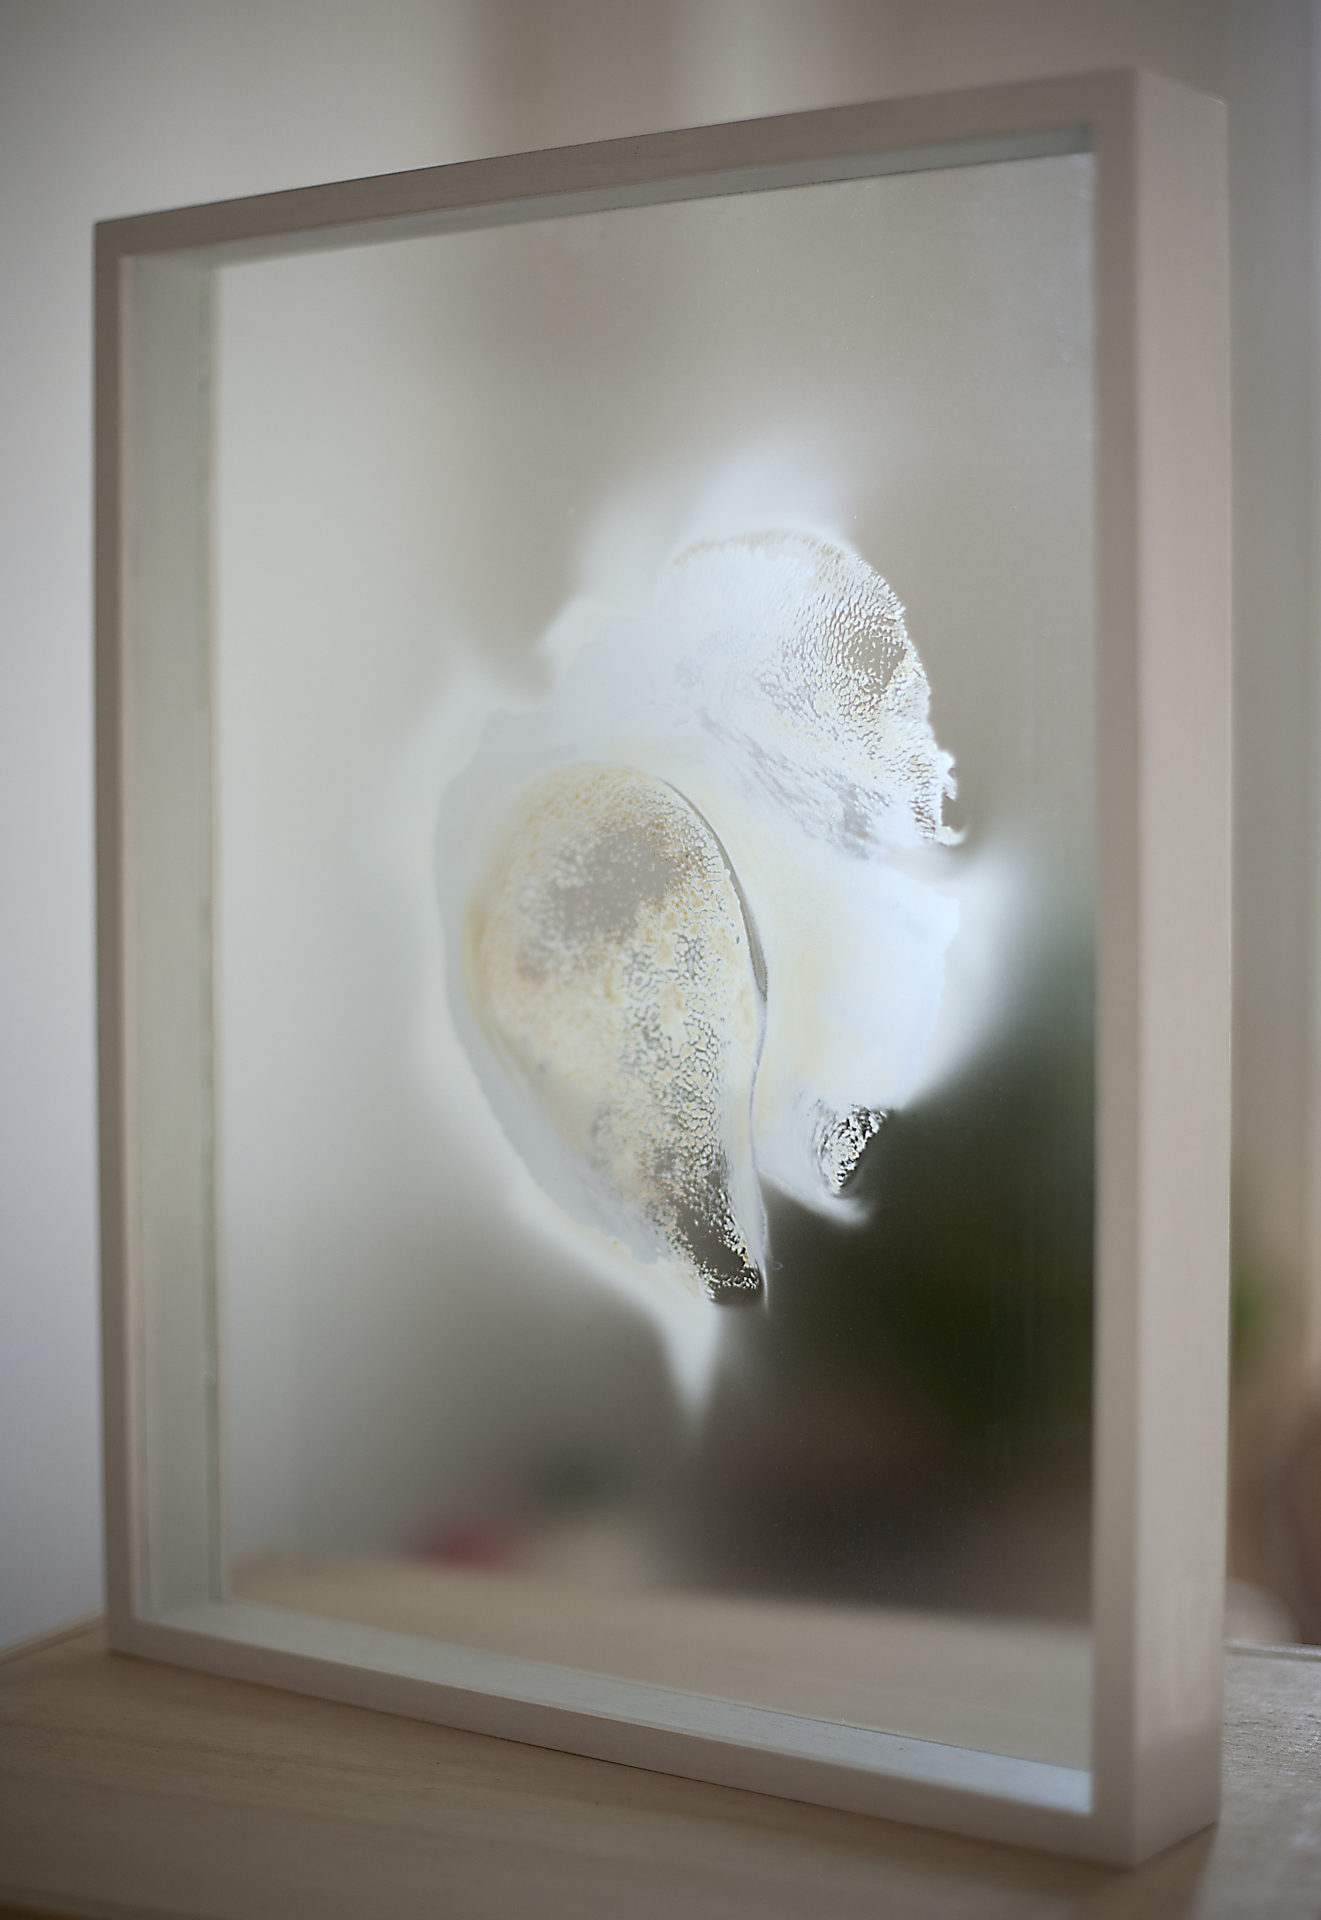 Squame 1, sporée sur verre, 35 x 28 cm, 2018